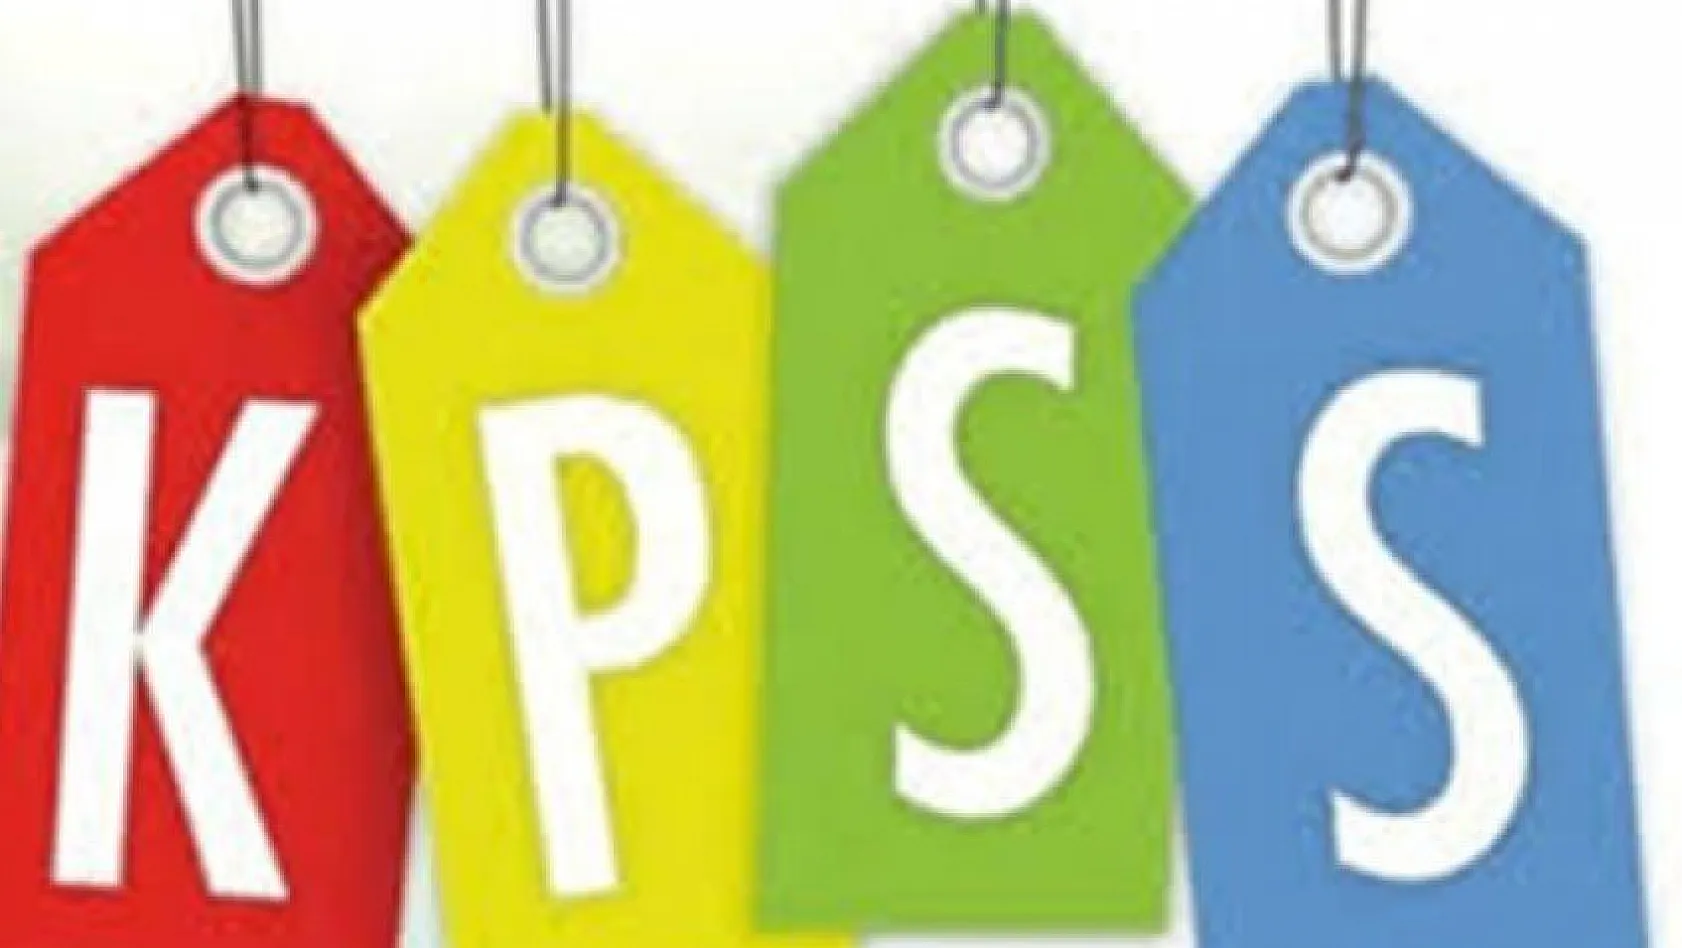 KPSS önlisans sonuçları açıklandı